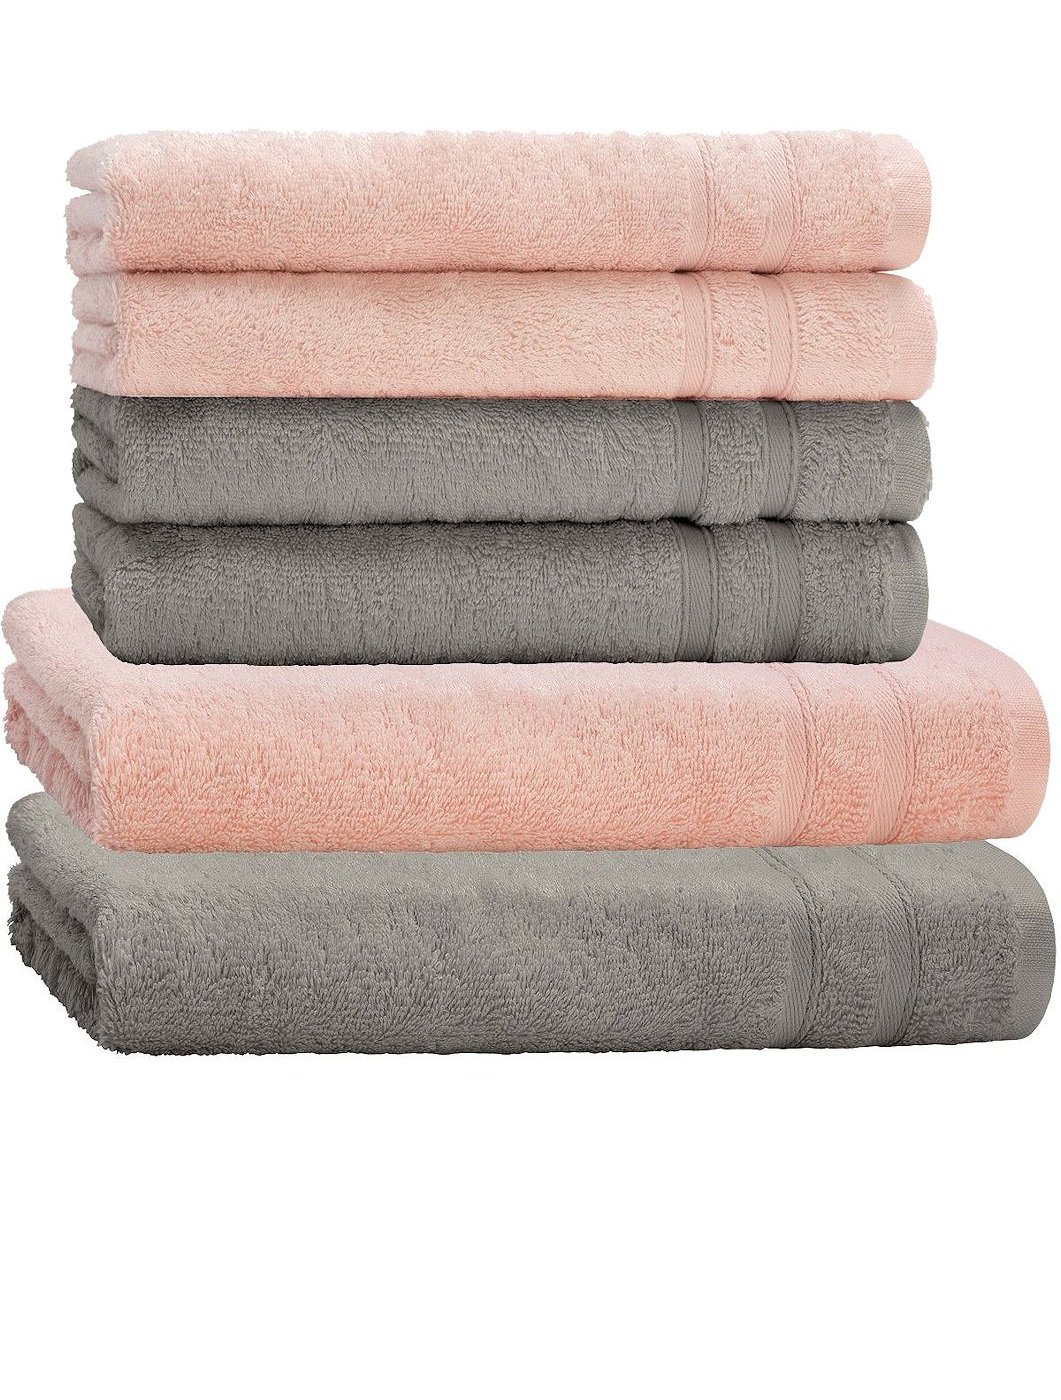 | 2 Handtücher 4 Set eBay Mix Duschtücher Farben 2 6tlg. Handtuch Duschtuch Baumwolle